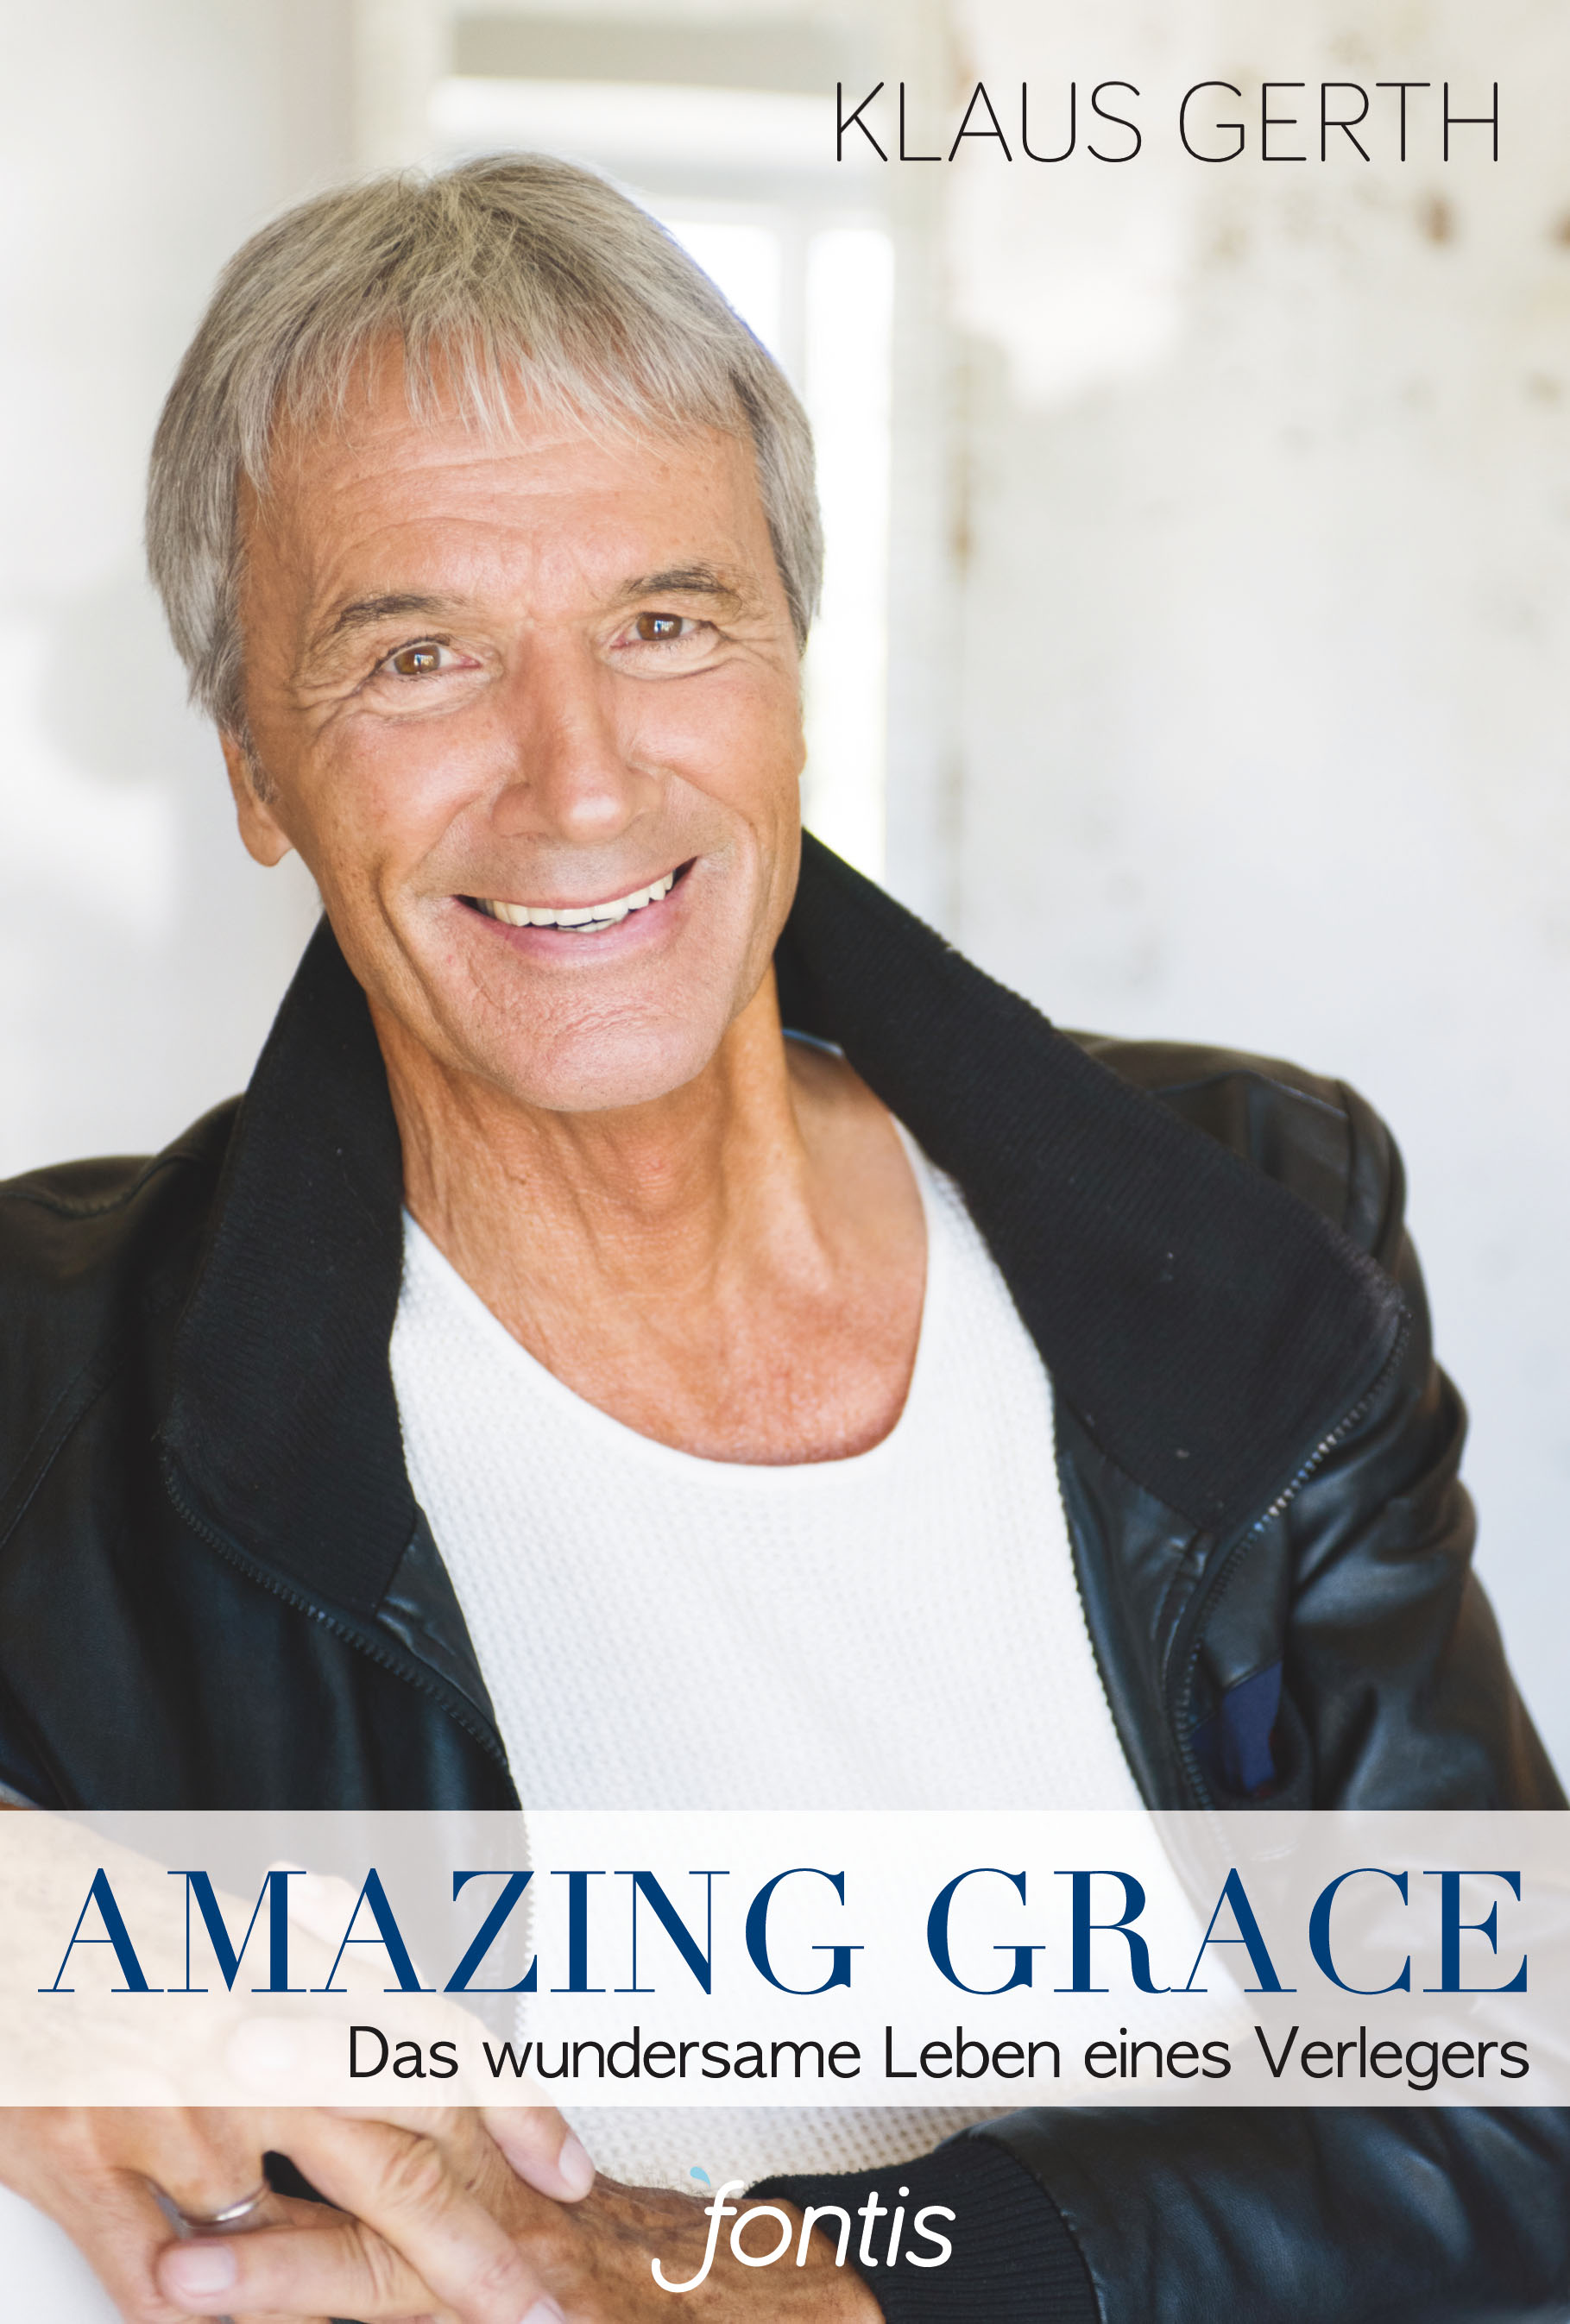 Amazing Grace|Das wundersame Leben eines Verlegers